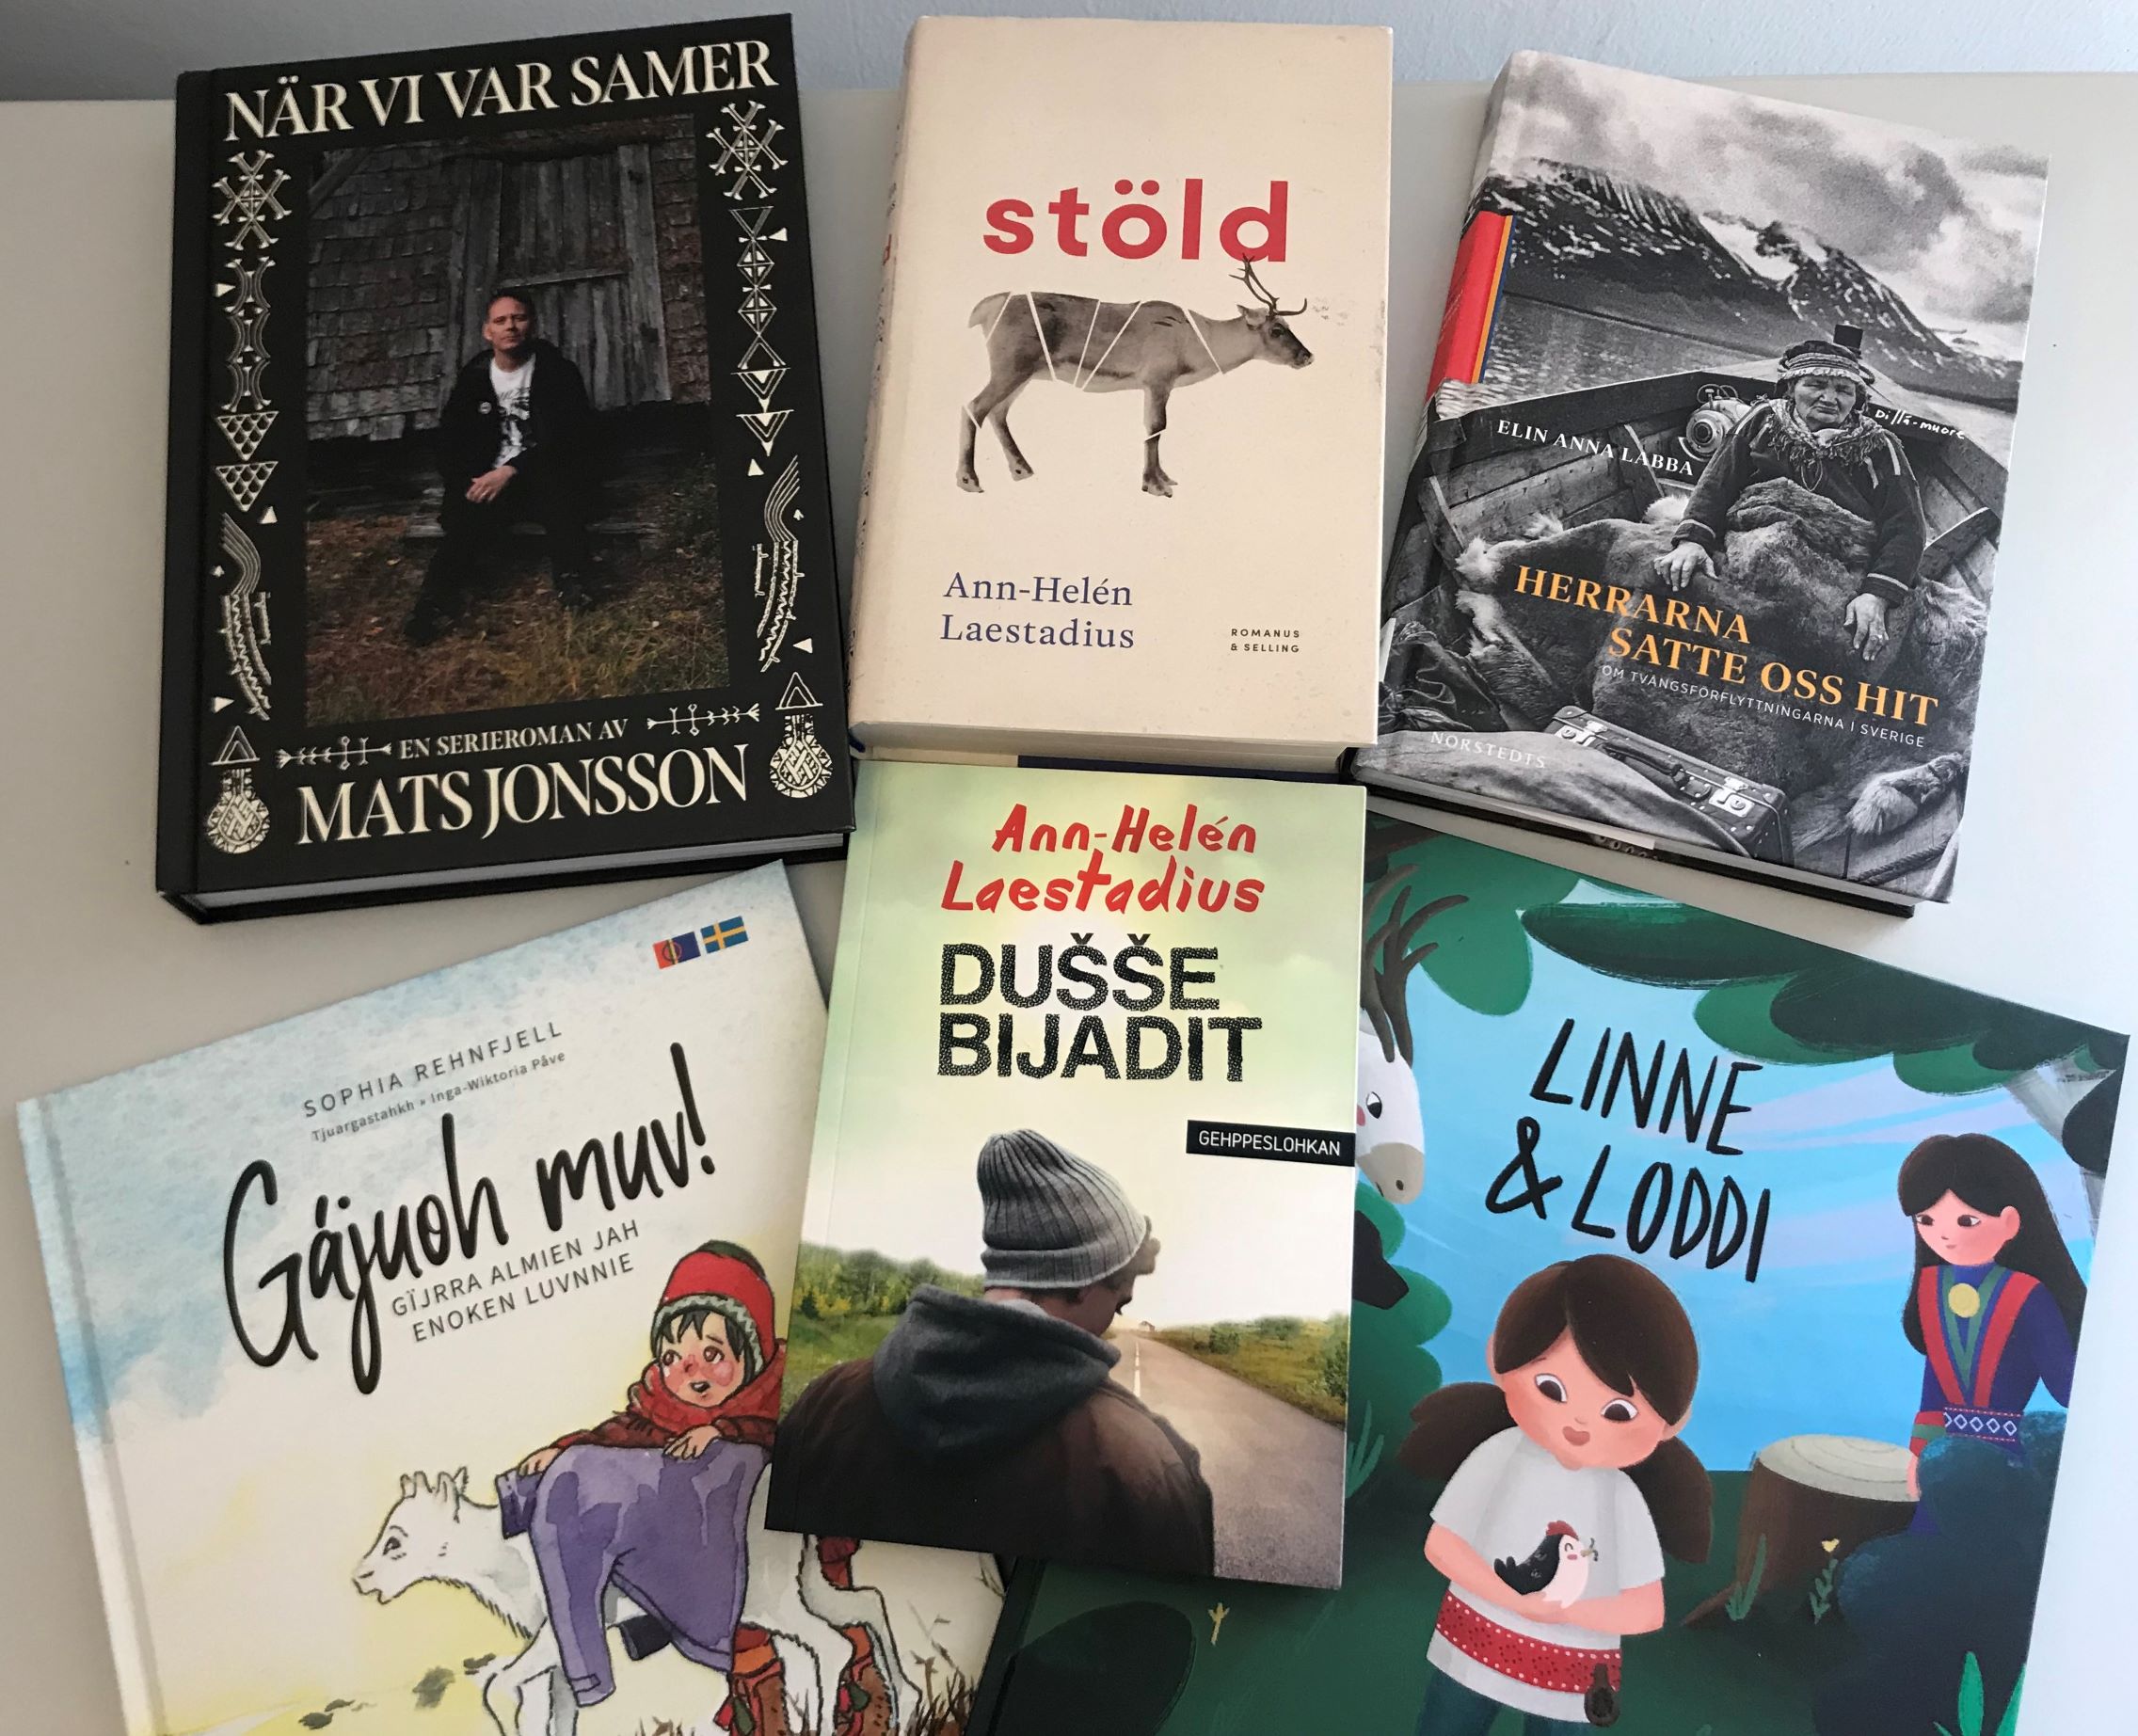 Sex böcker liggande på ett bord, samtliga har omslag eller titlar som syftar på samisk kultur eller historia.